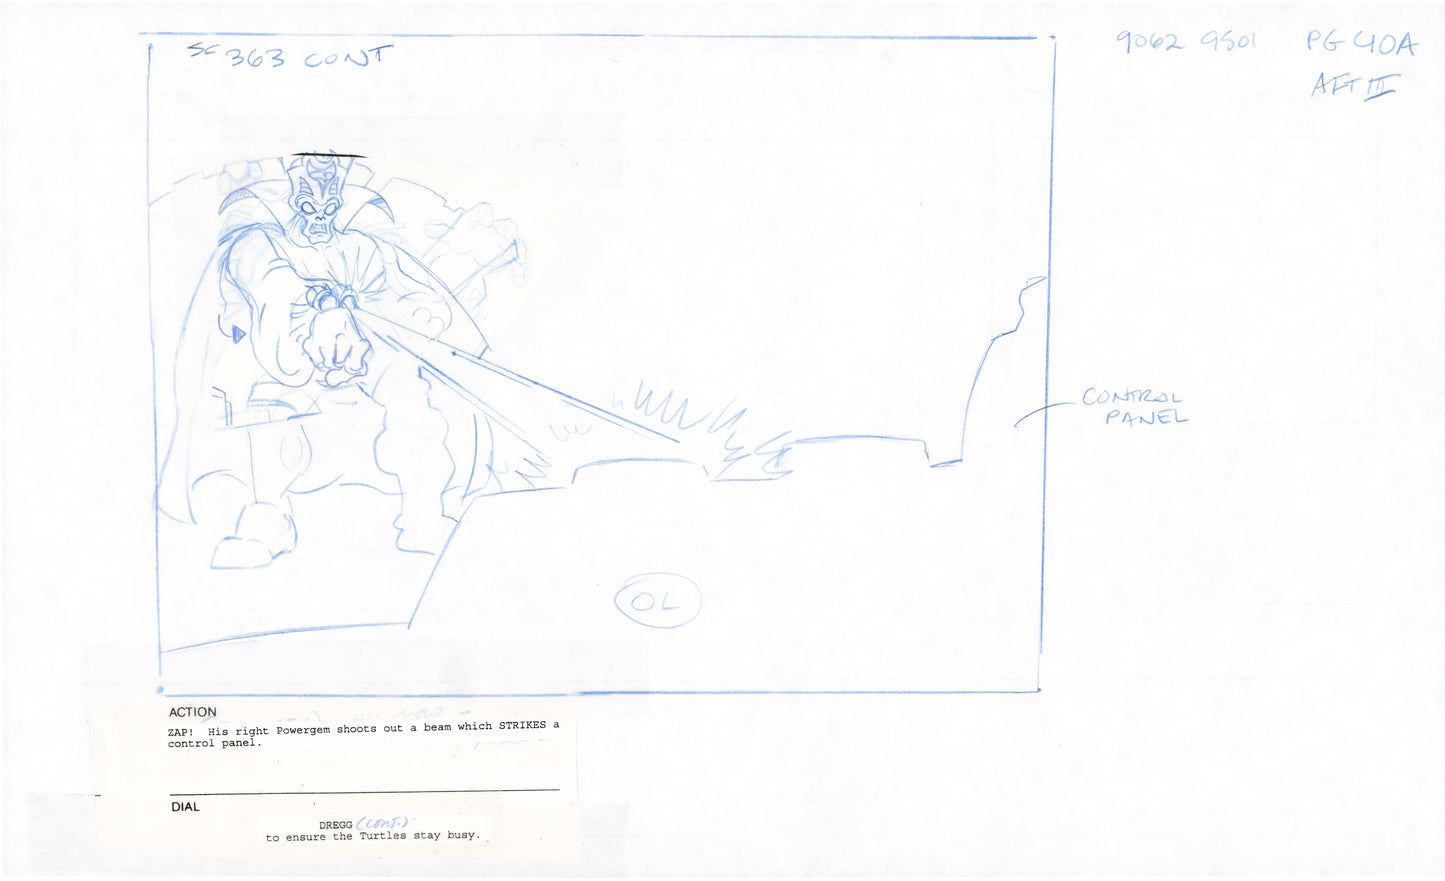 Teenage Mutant Ninja Turtles TMNT Original Production Animation Storyboard 1995 U3-40A